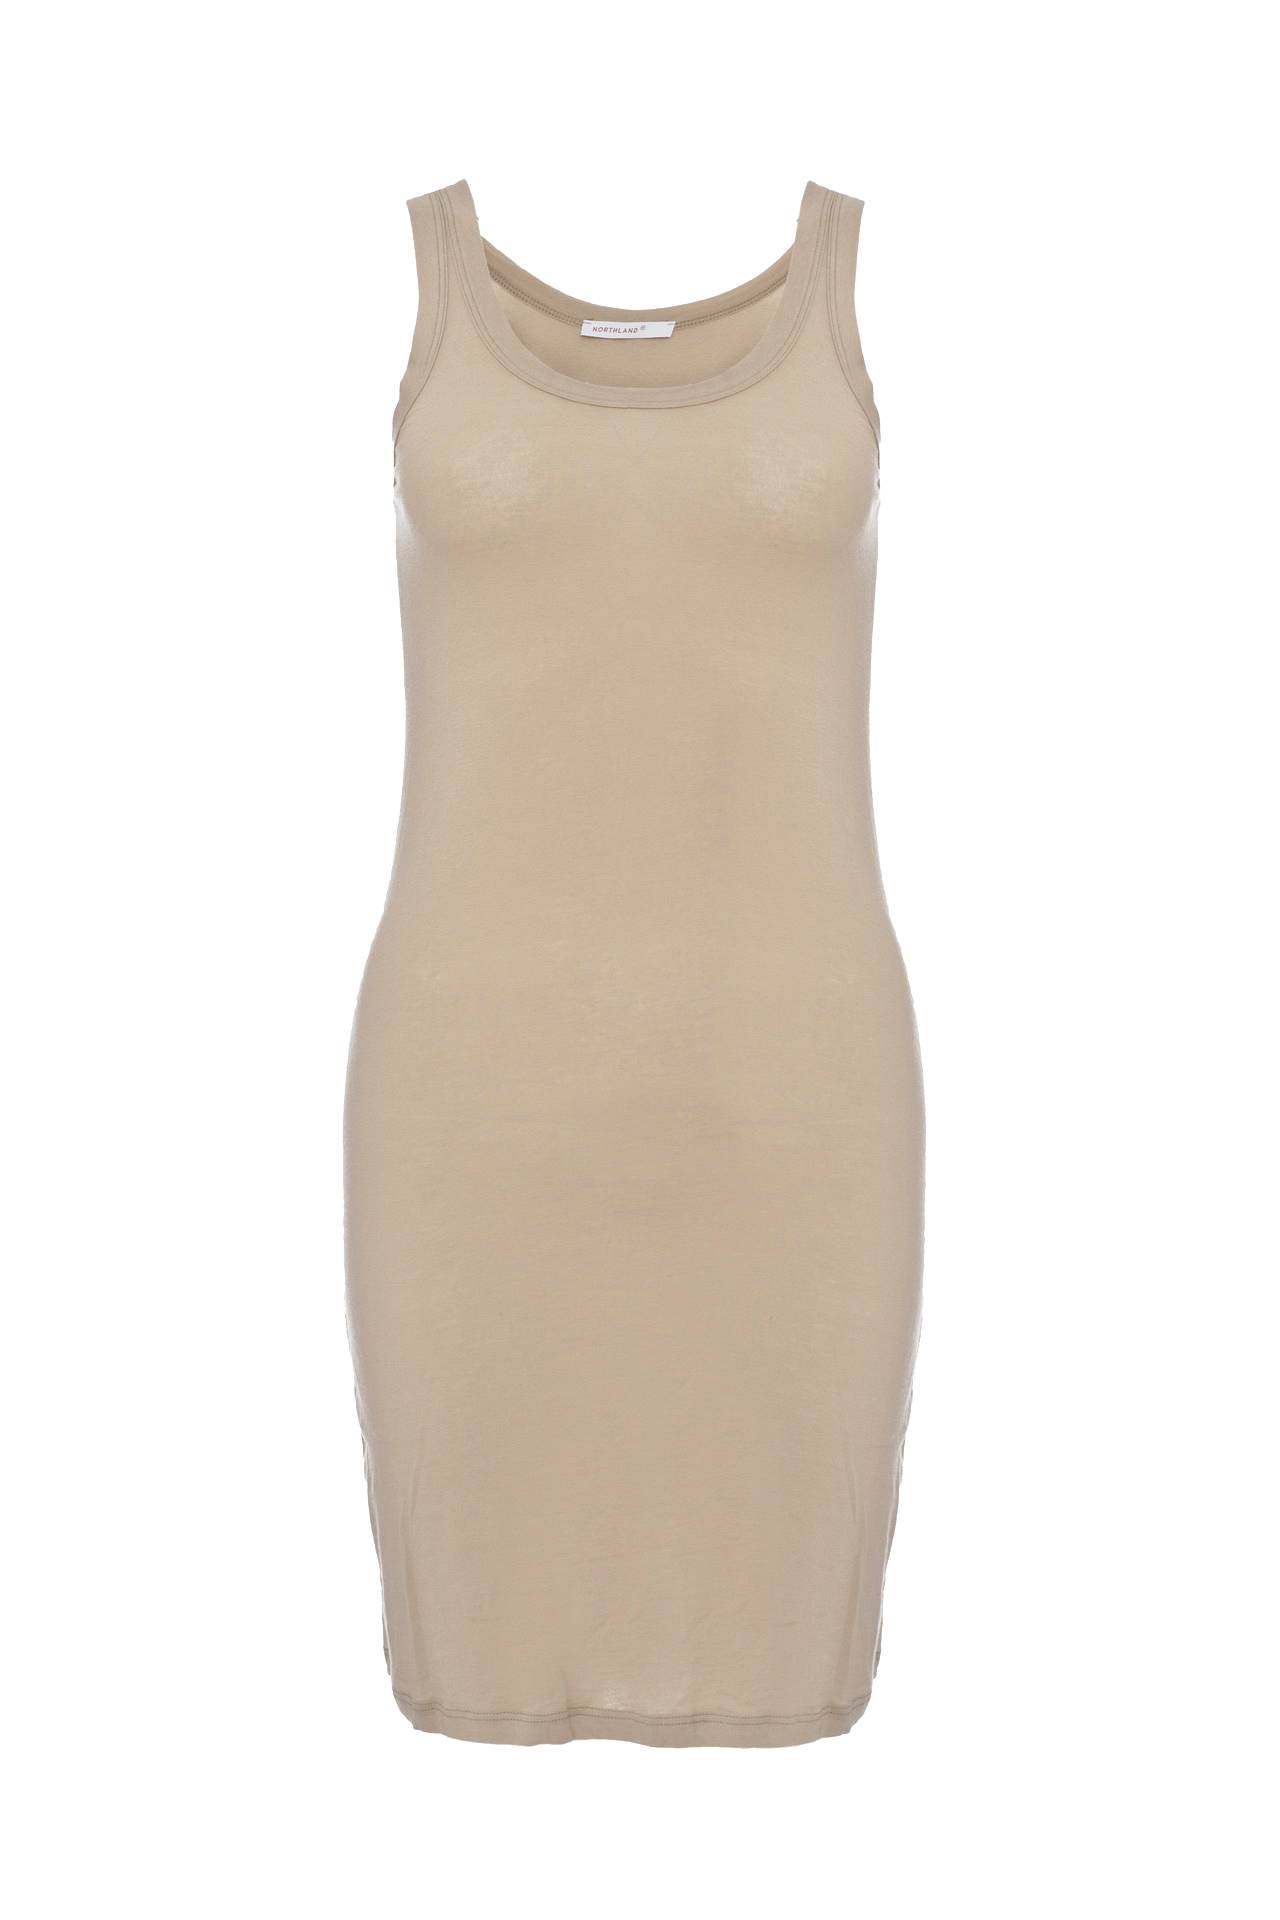 Одежда женская Платье NORTHLAND (UE0212/11.1). Купить за 2450 руб.